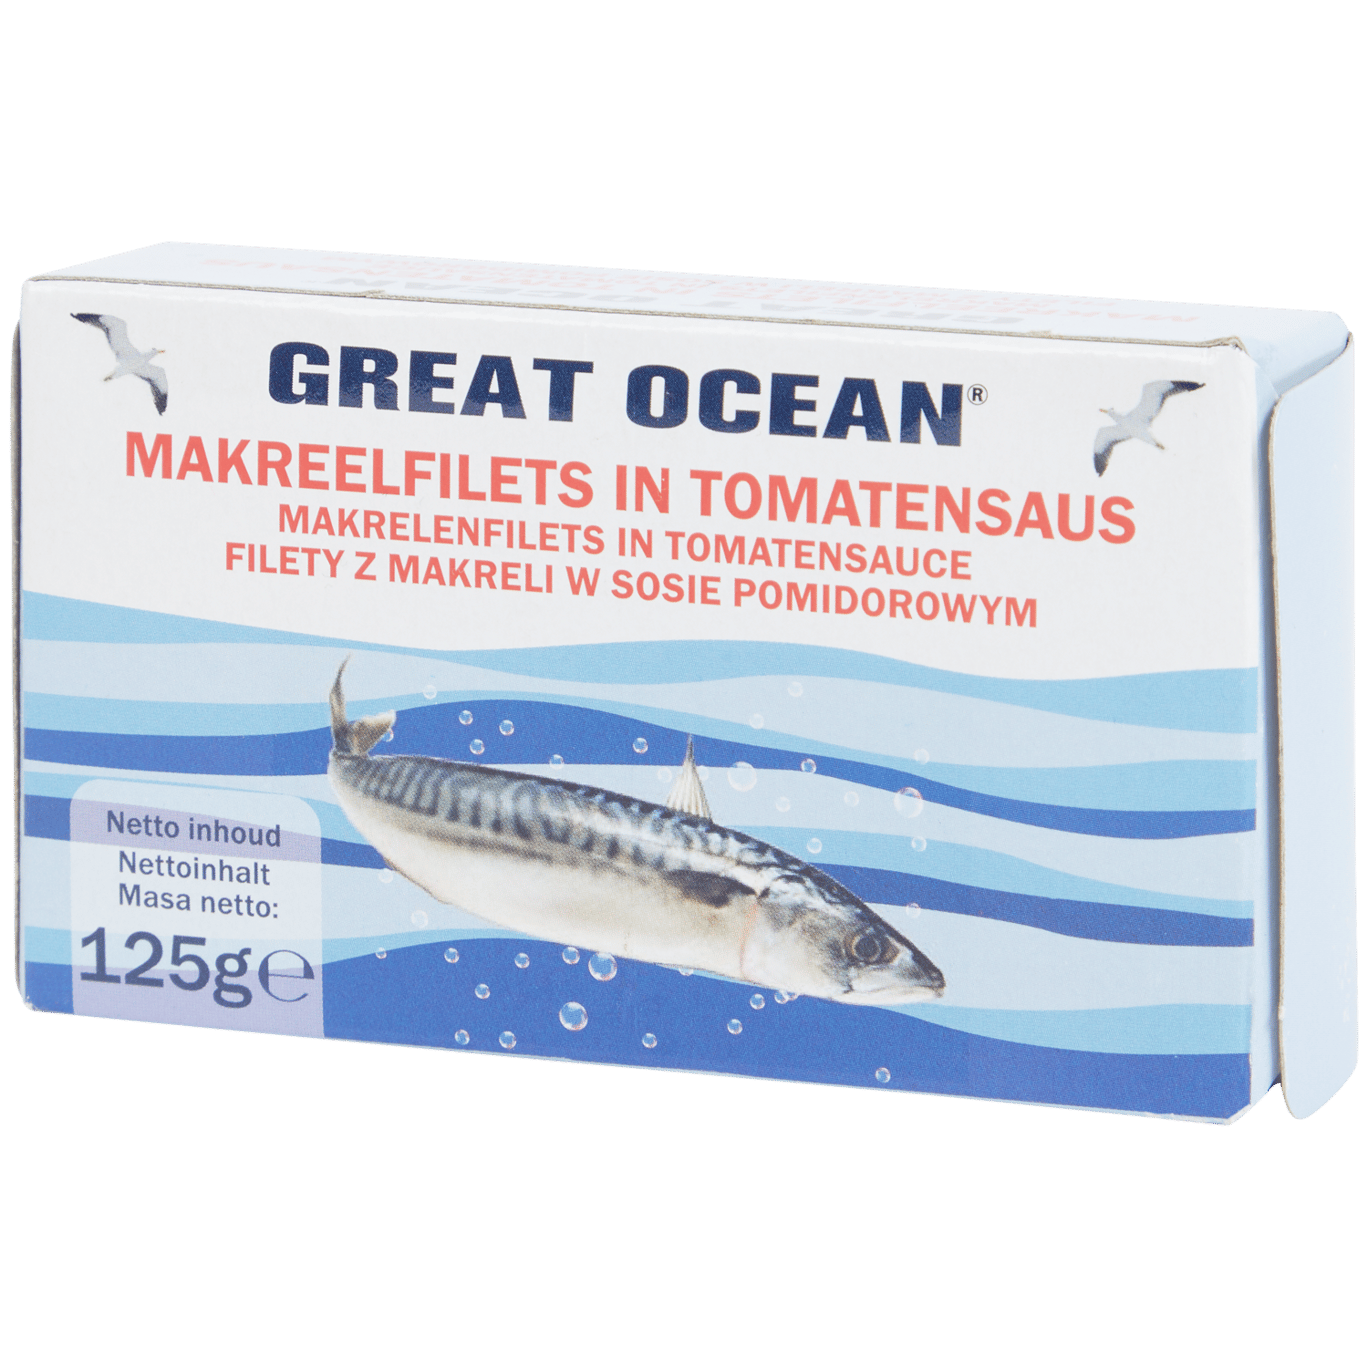 Great Ocean Makrelenfilet in Tomatensauce